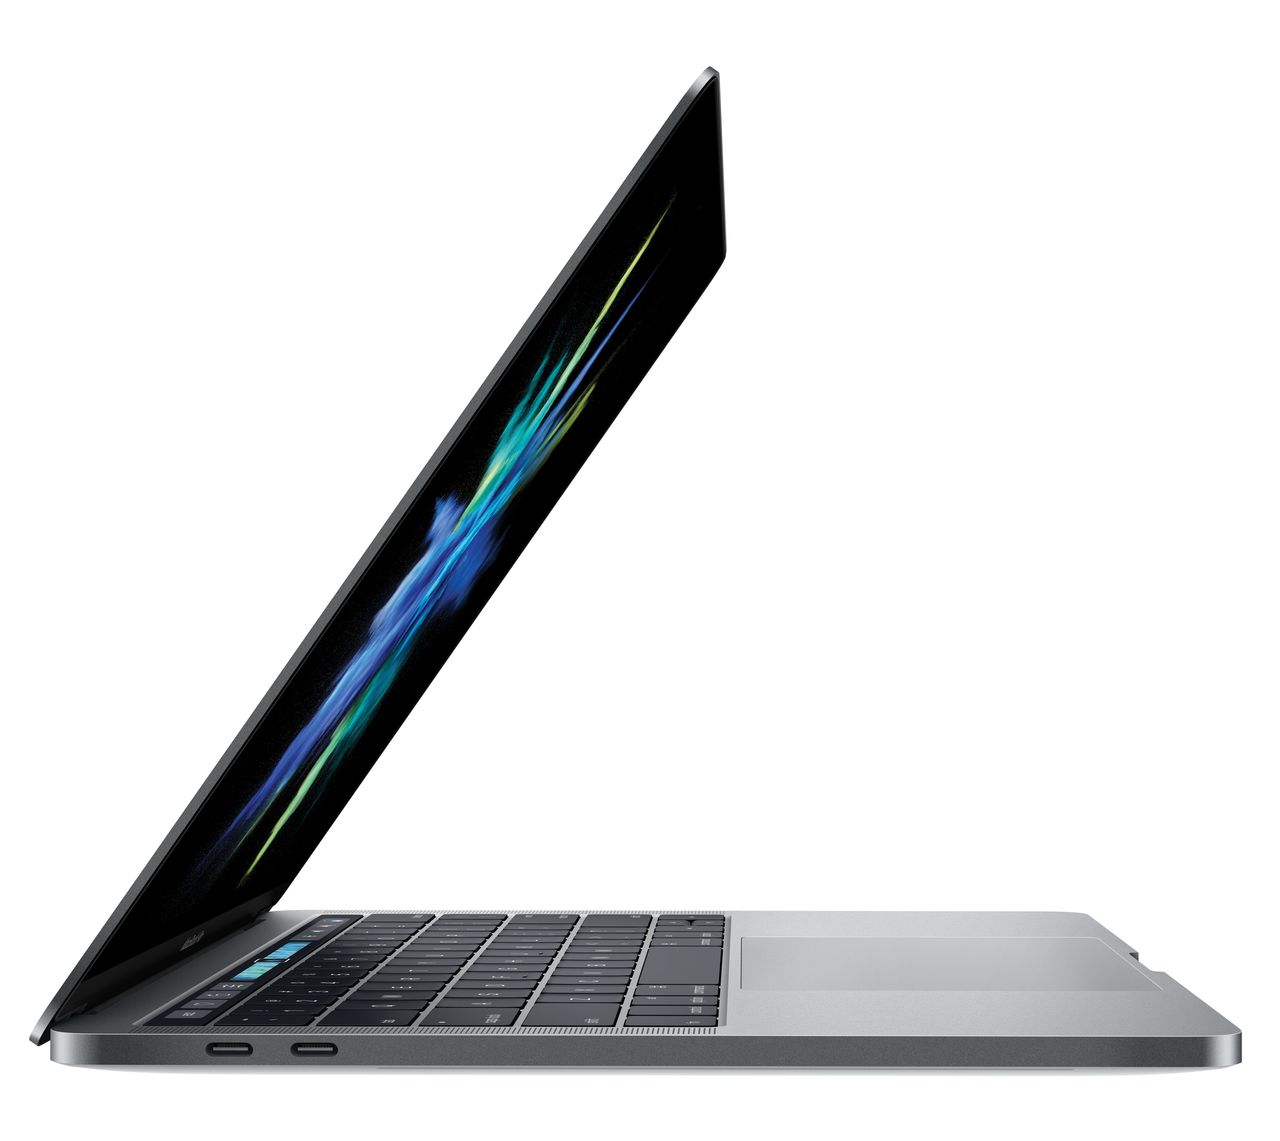 Nowe MacBooki Pro z dotykowym panelem Touch Bar. Wydajne, nowoczesne i drogie narzędzie dla fotografa?